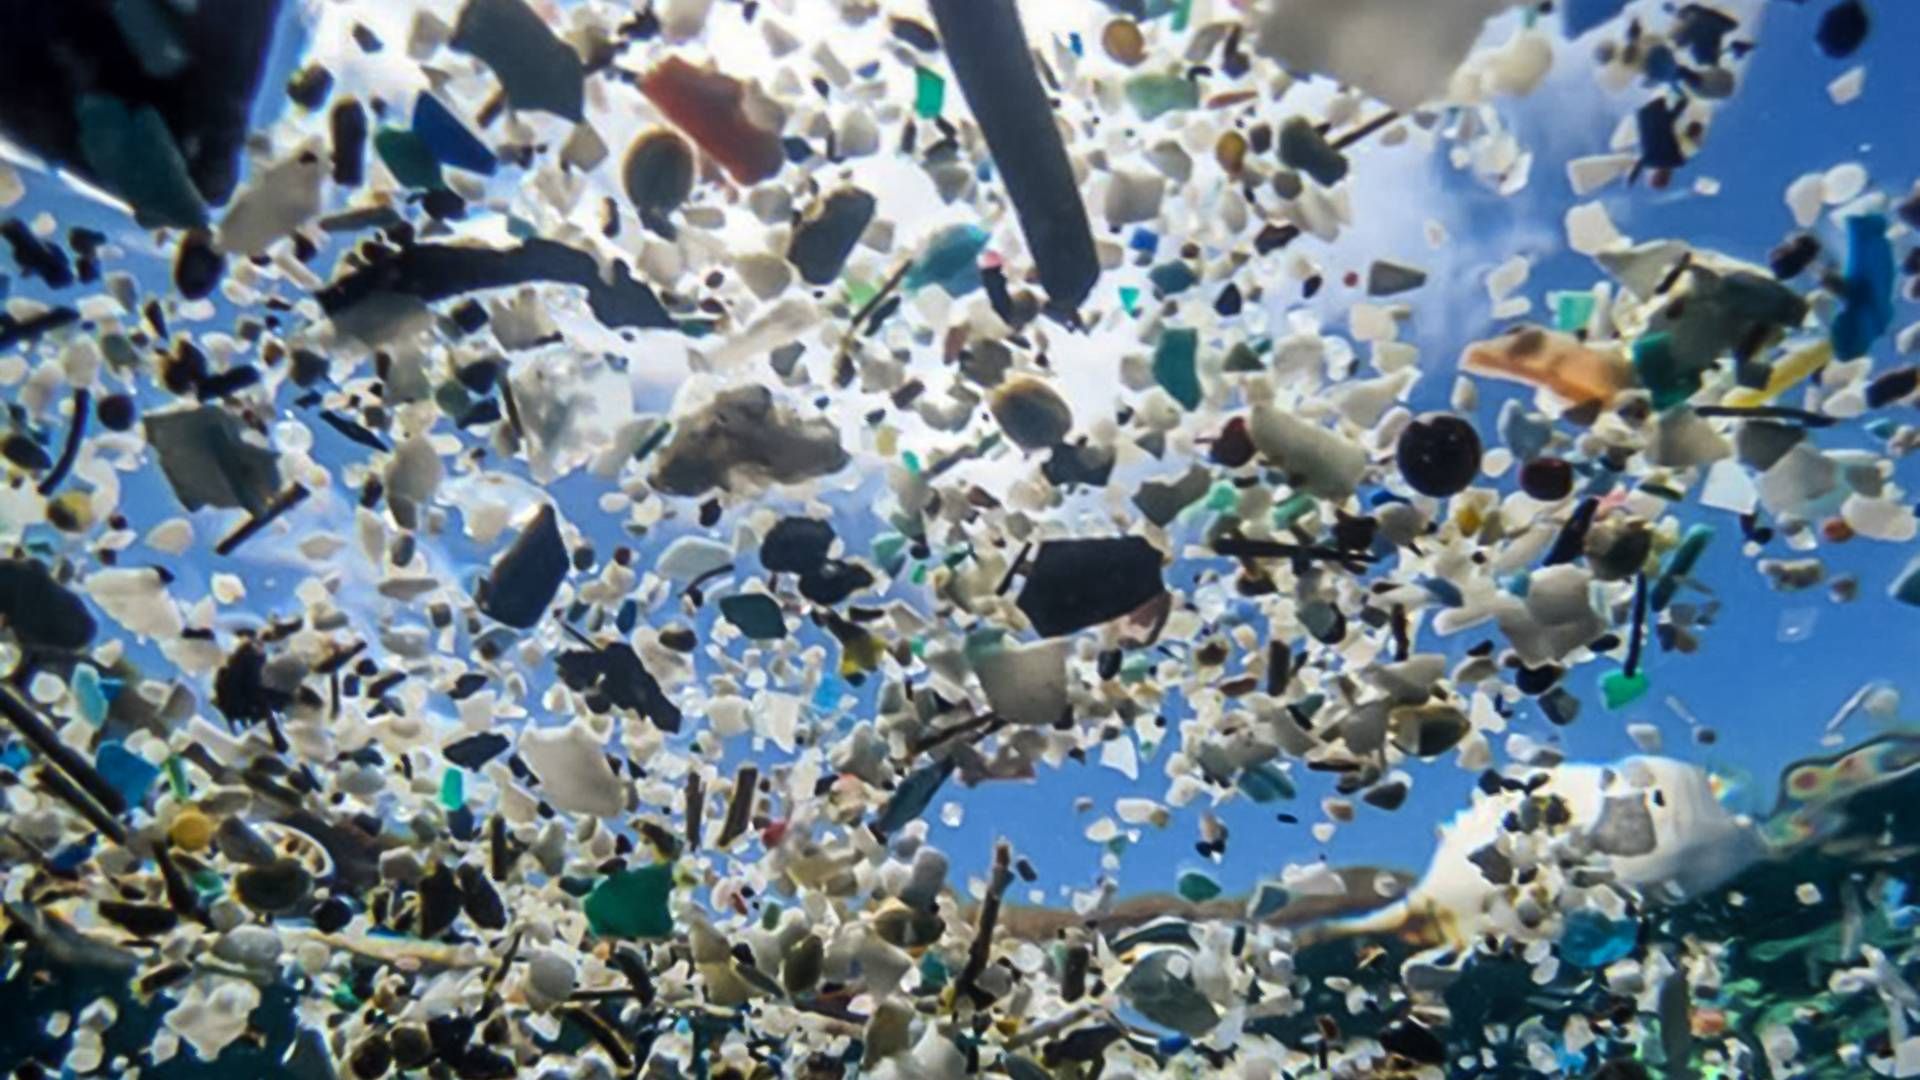 Ifølge Plastic Change findes der områder med høje koncentrationer af nedbrudt plastik i havene, de såkaldte gyres eller ”plastiksupper”. | Foto: Plastic Change/PR